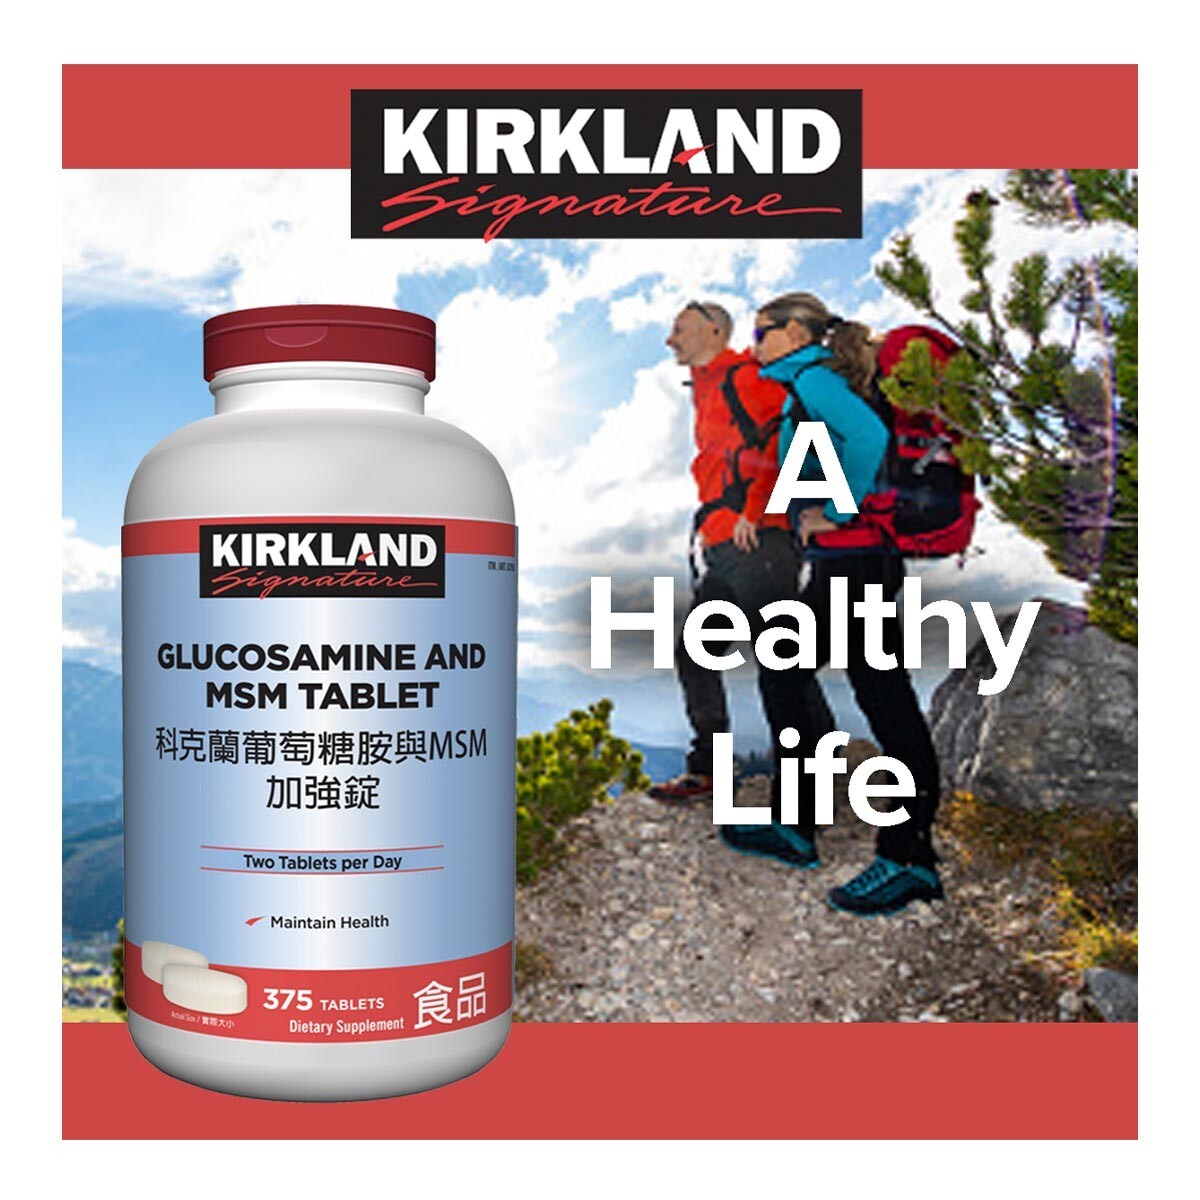 Kirkland Signature 科克蘭 葡萄糖胺與MSM加強錠 375錠